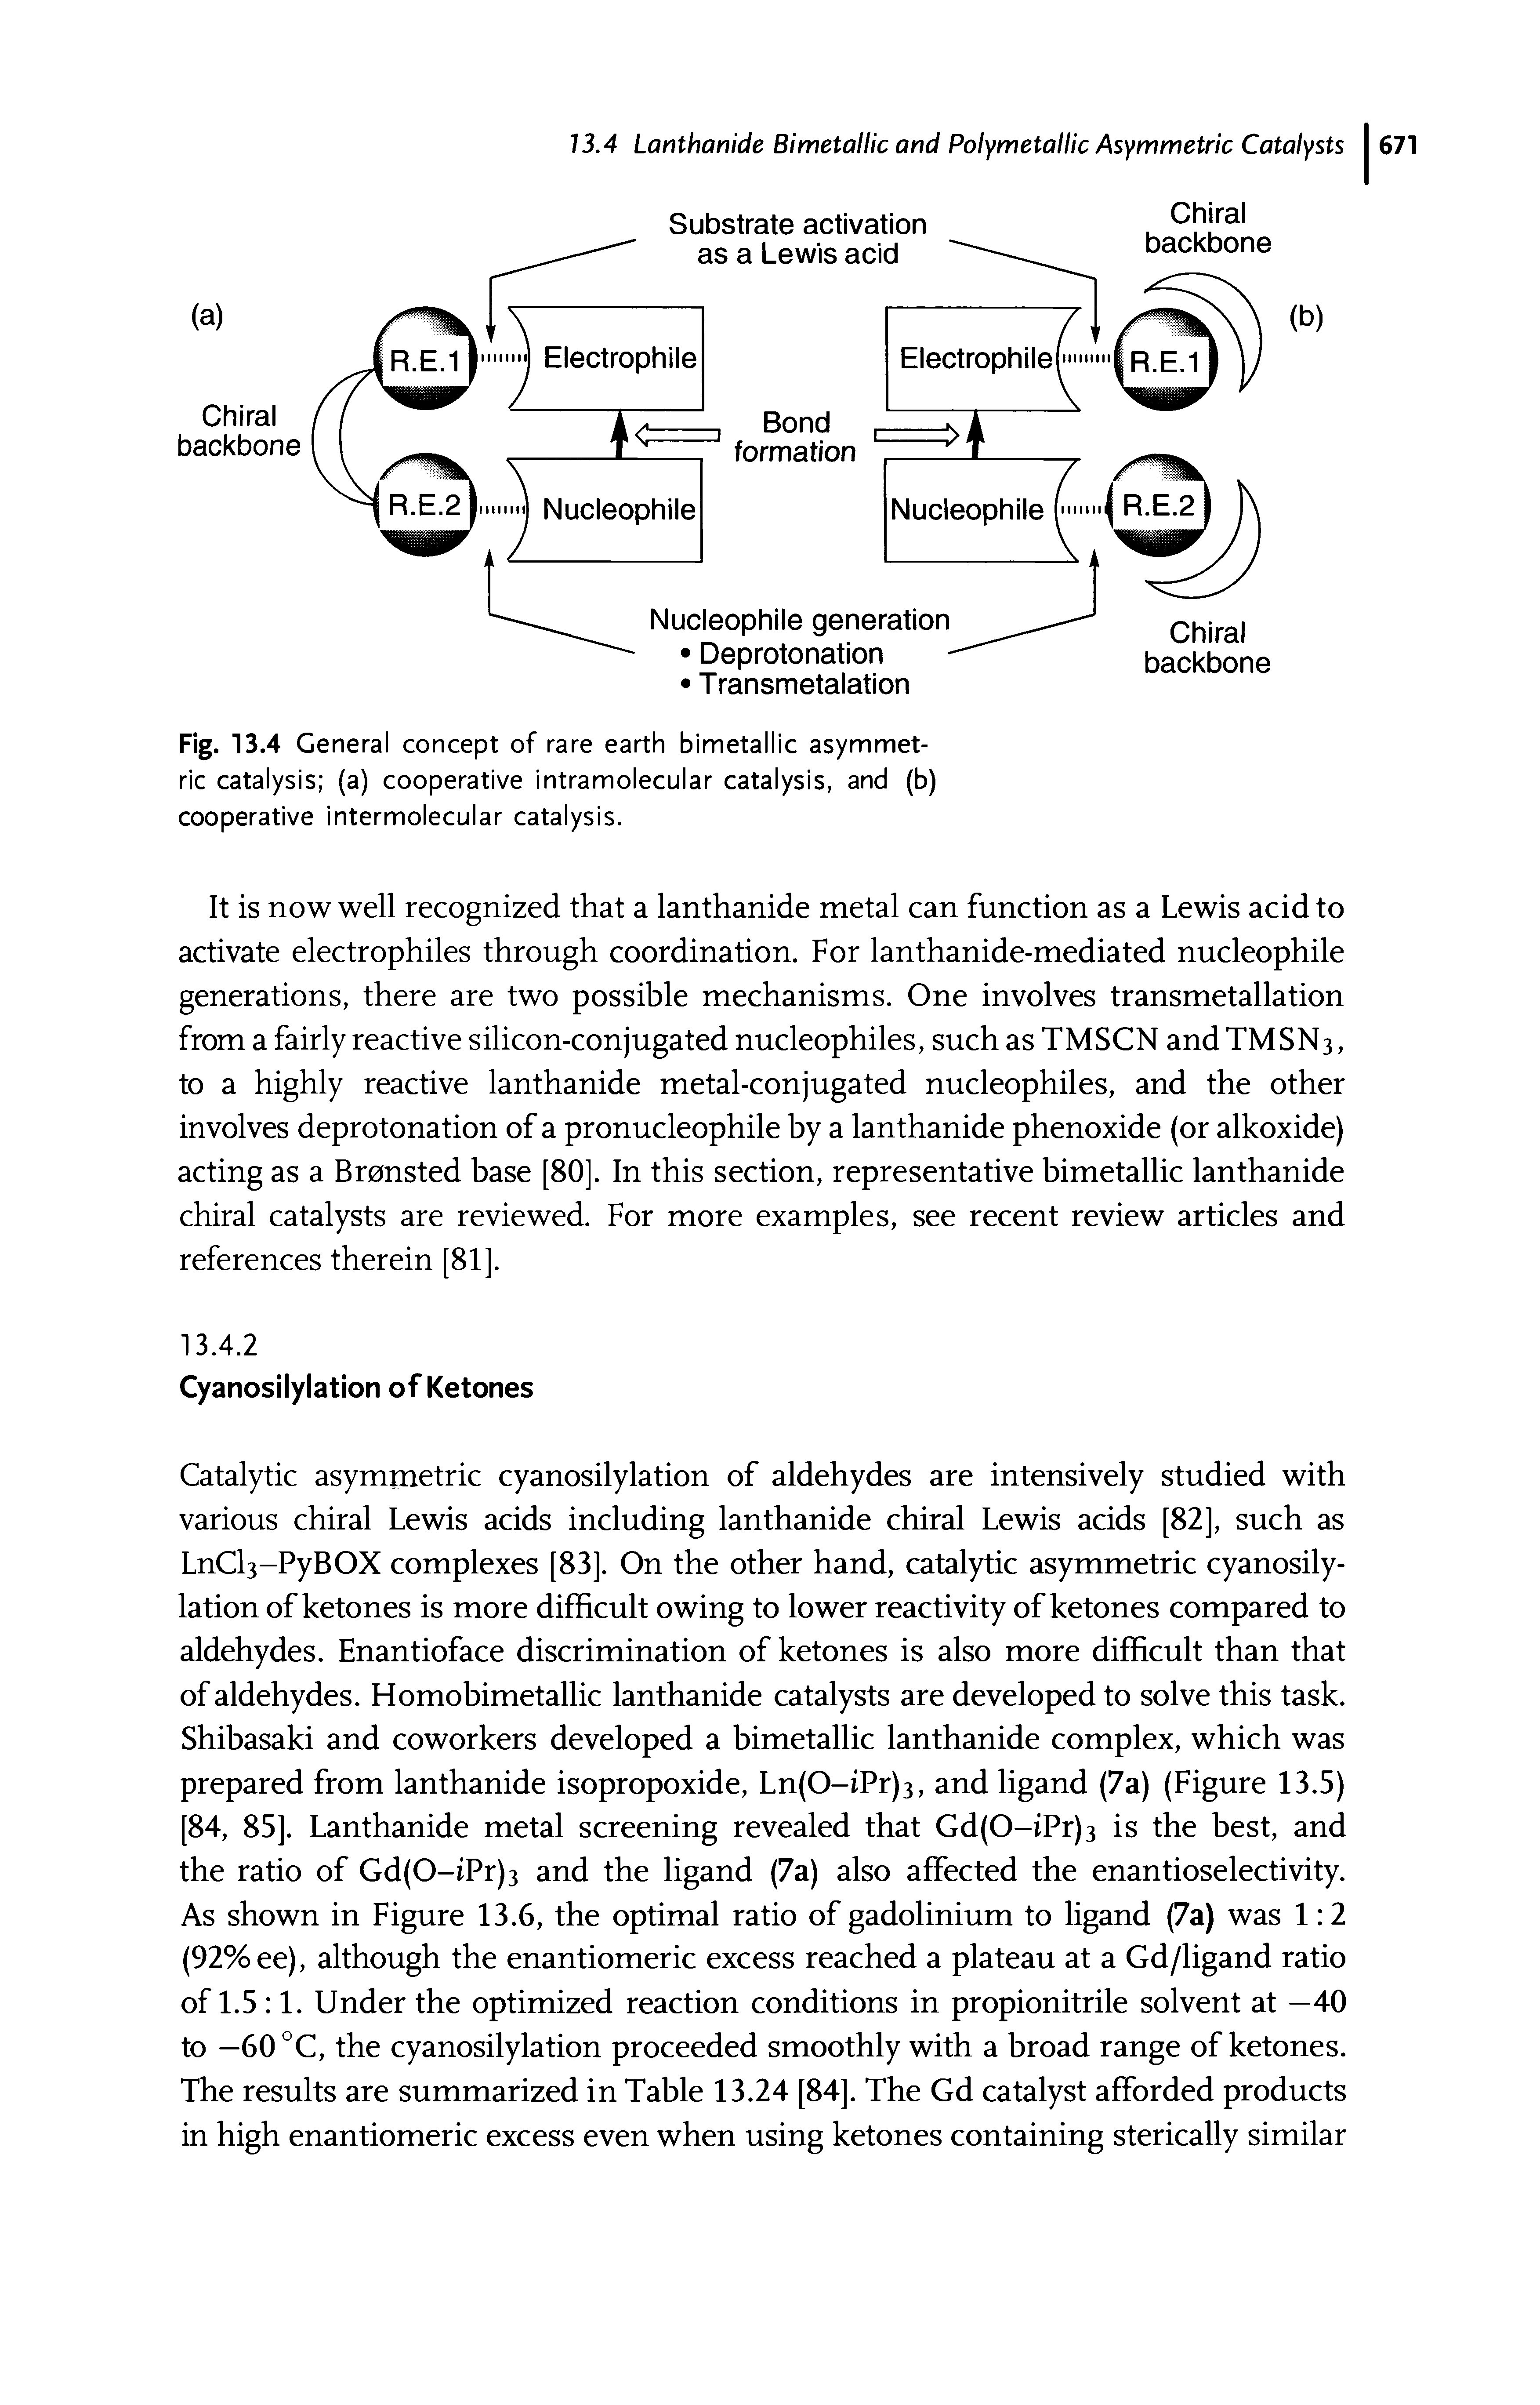 Fig. 13.4 General concept of rare earth bimetallic asymmetric catalysis (a) cooperative intramolecular catalysis, and (b) cooperative intermolecular catalysis.